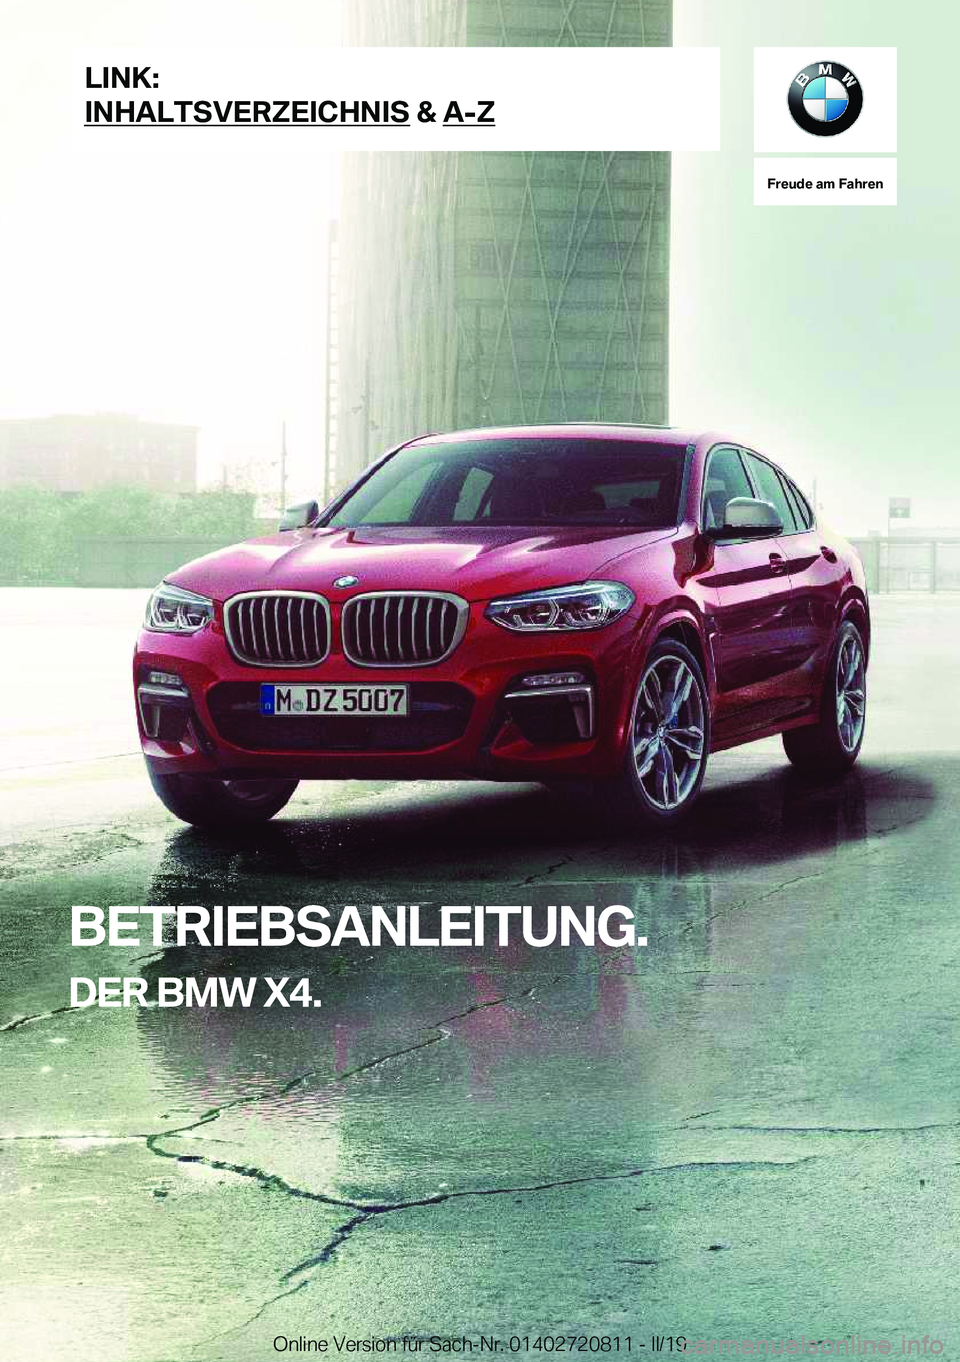 BMW X4 2019  Betriebsanleitungen (in German) �F�r�e�u�d�e��a�m��F�a�h�r�e�n
�B�E�T�R�I�E�B�S�A�N�L�E�I�T�U�N�G�.�D�E�R��B�M�W��X�4�.�L�I�N�K�:
�I�N�H�A�L�T�S�V�E�R�Z�E�I�C�H�N�I�S��&��A�-�Z�O�n�l�i�n�e��V�e�r�s�i�o�n��f�